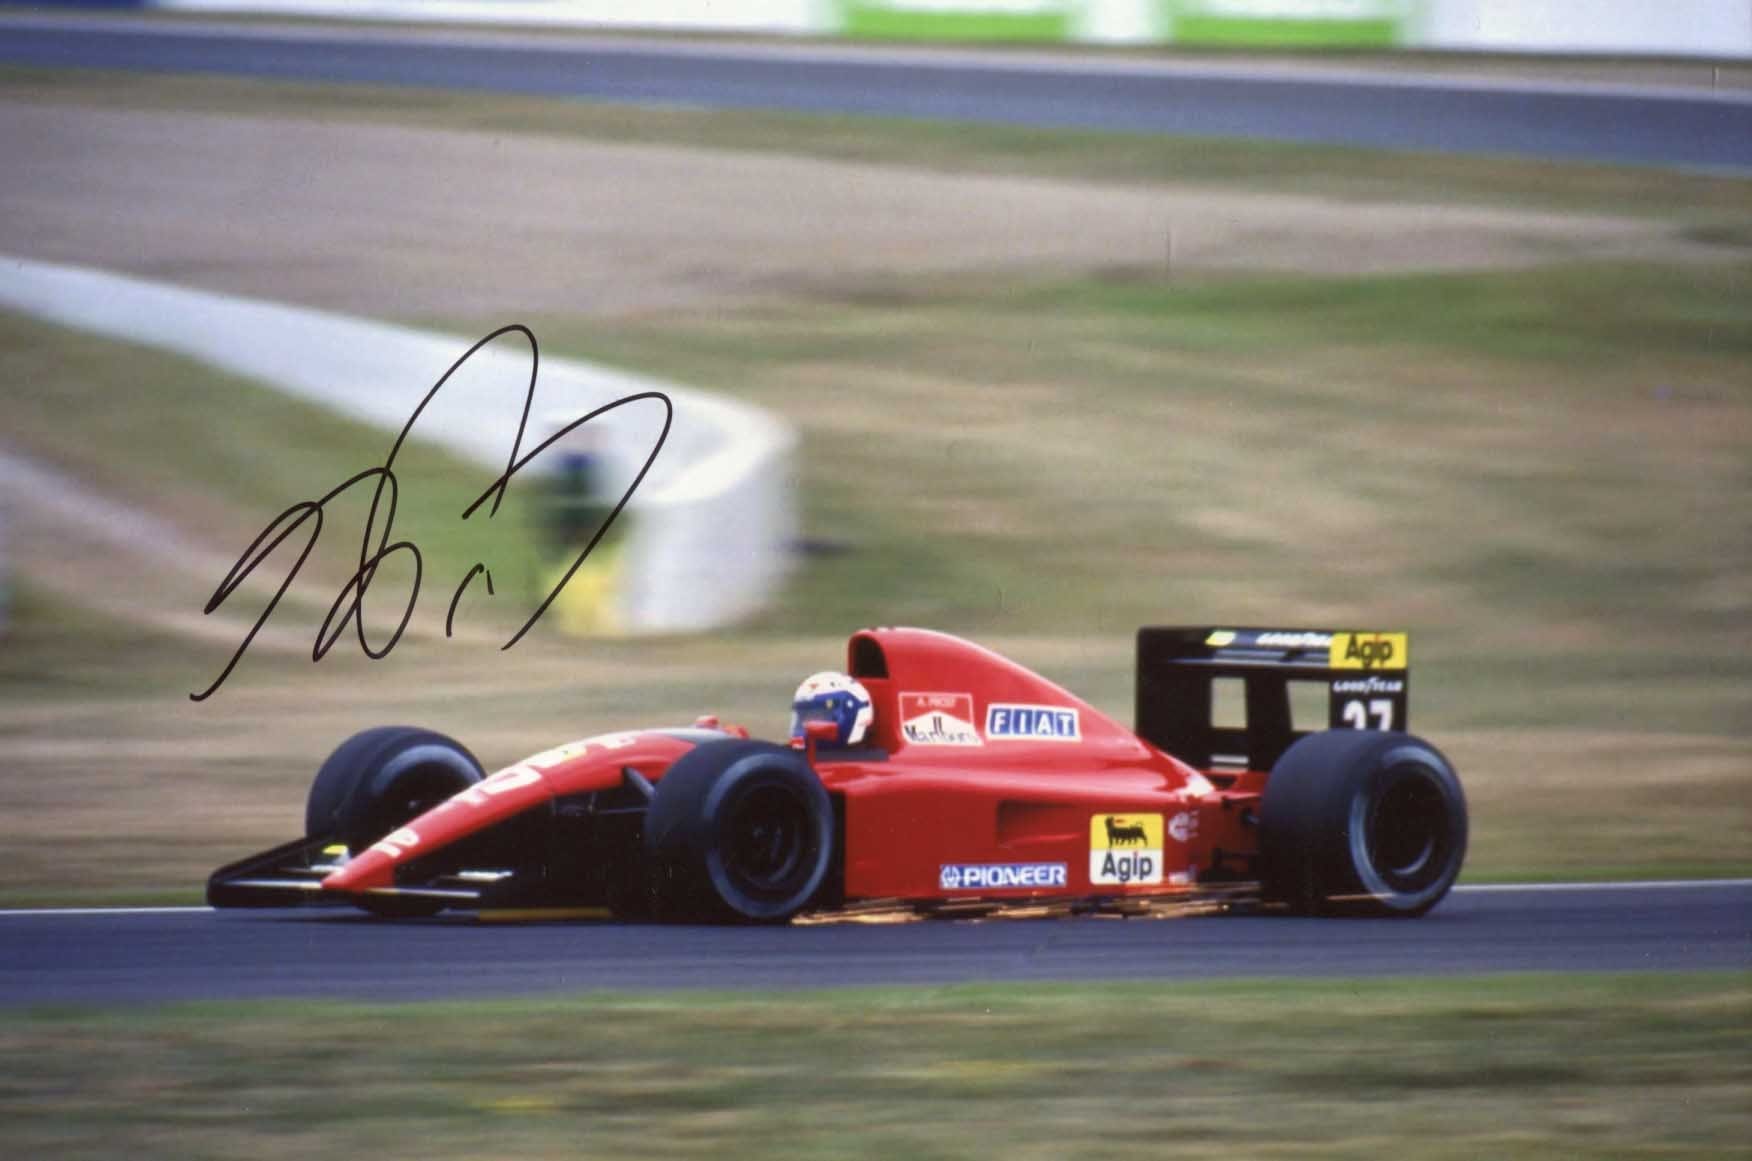 Alain Marie Pascal Prost Autograph Autogramm | ID 7817579266197